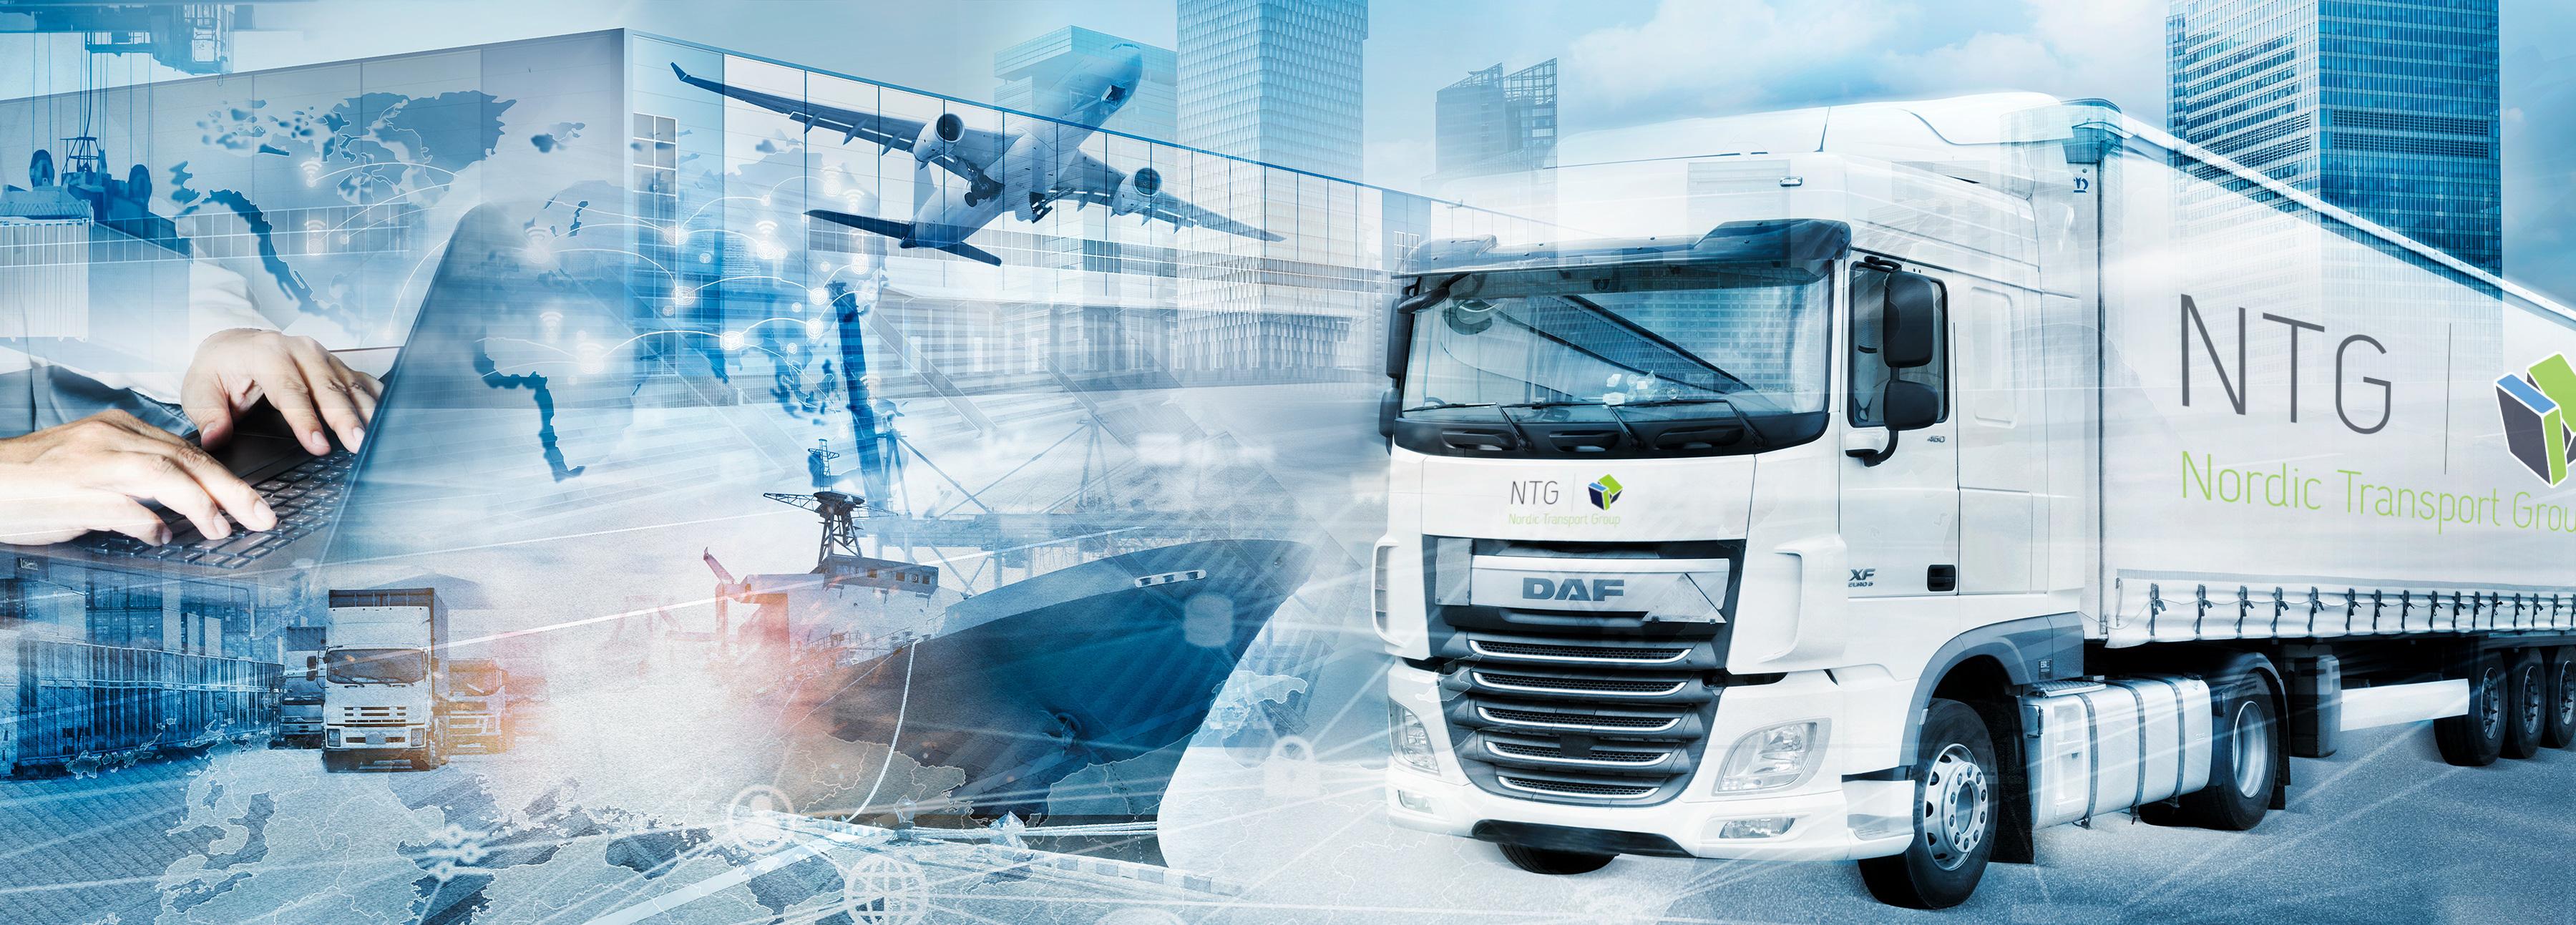 Kundenorientierte Organisation von Transport- und Logistikleistungen{BTN=/supply-chain-solutions}